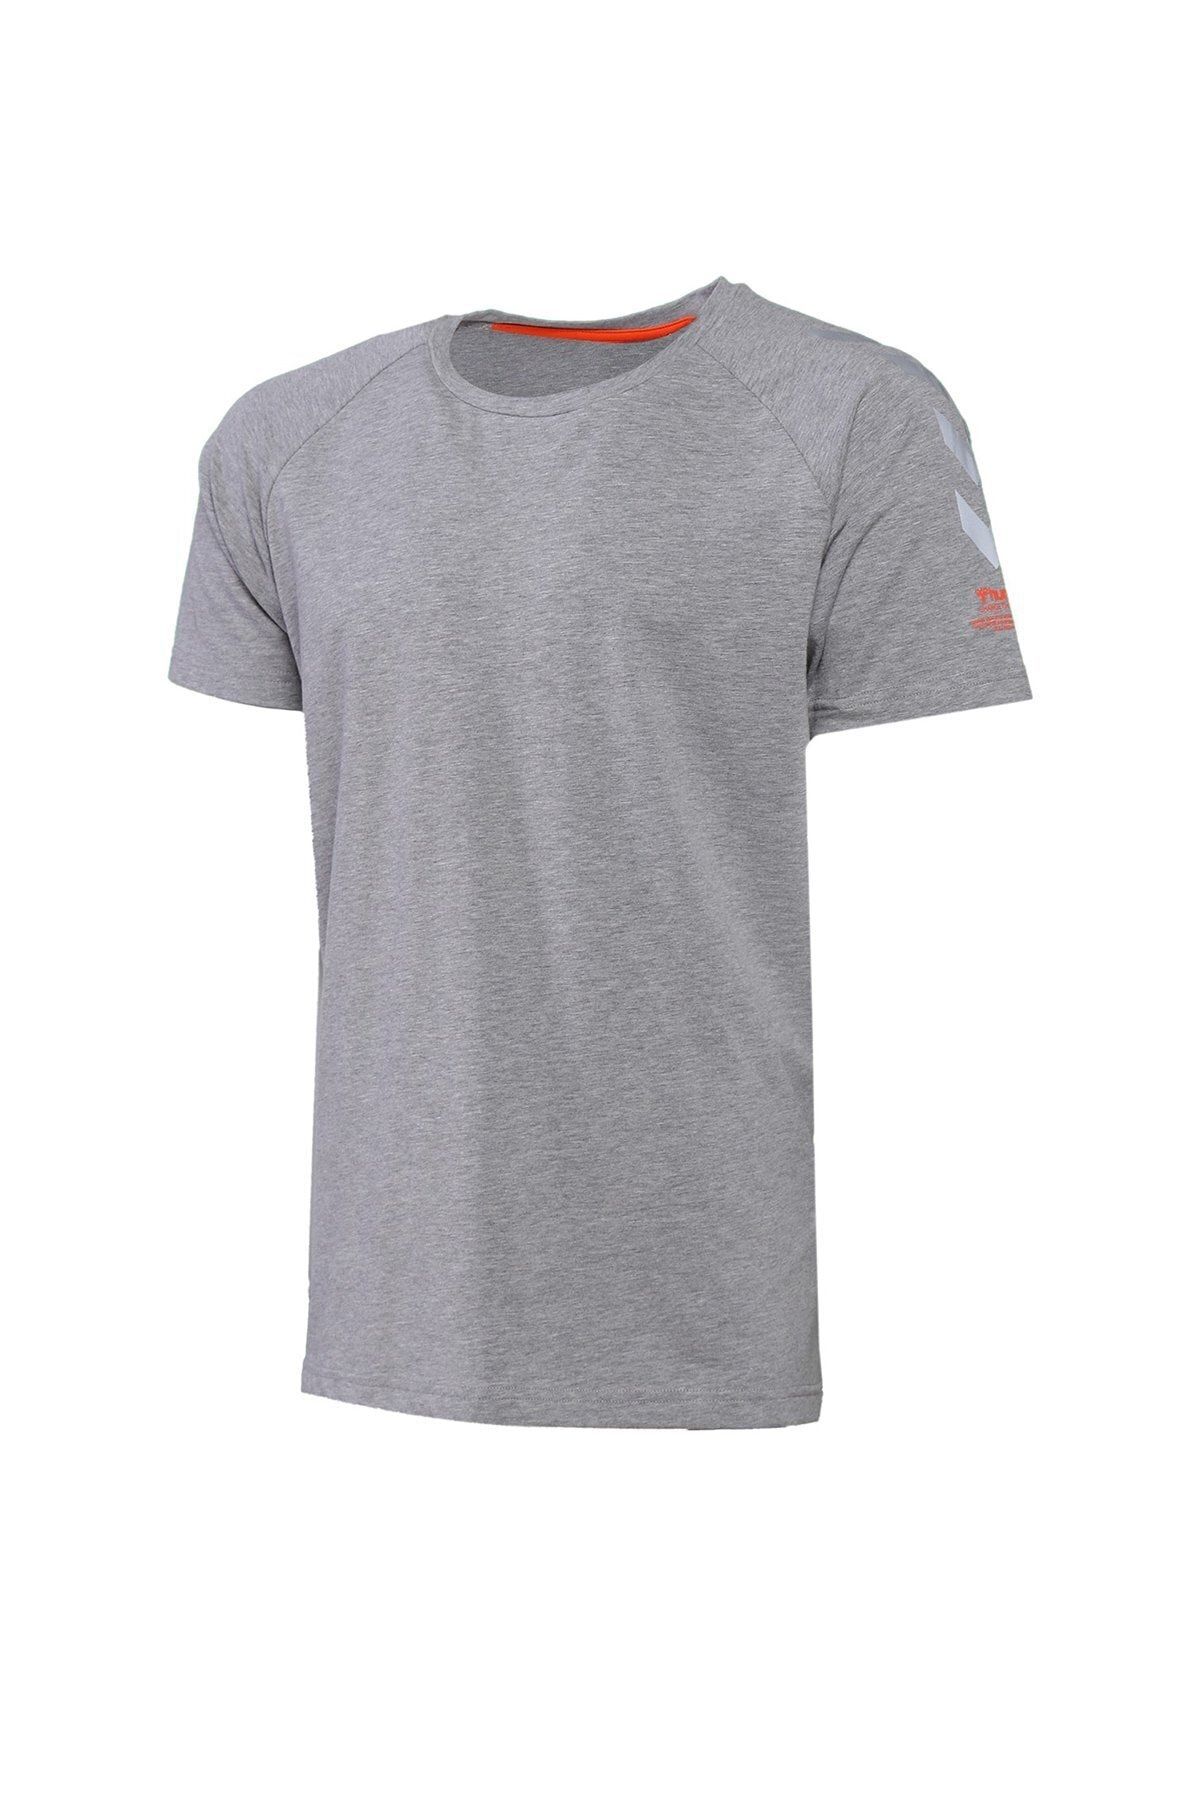 تی شرت ورزش قابل تنفس مردانه خاکستری هومل Hummel (برند دانمارک)